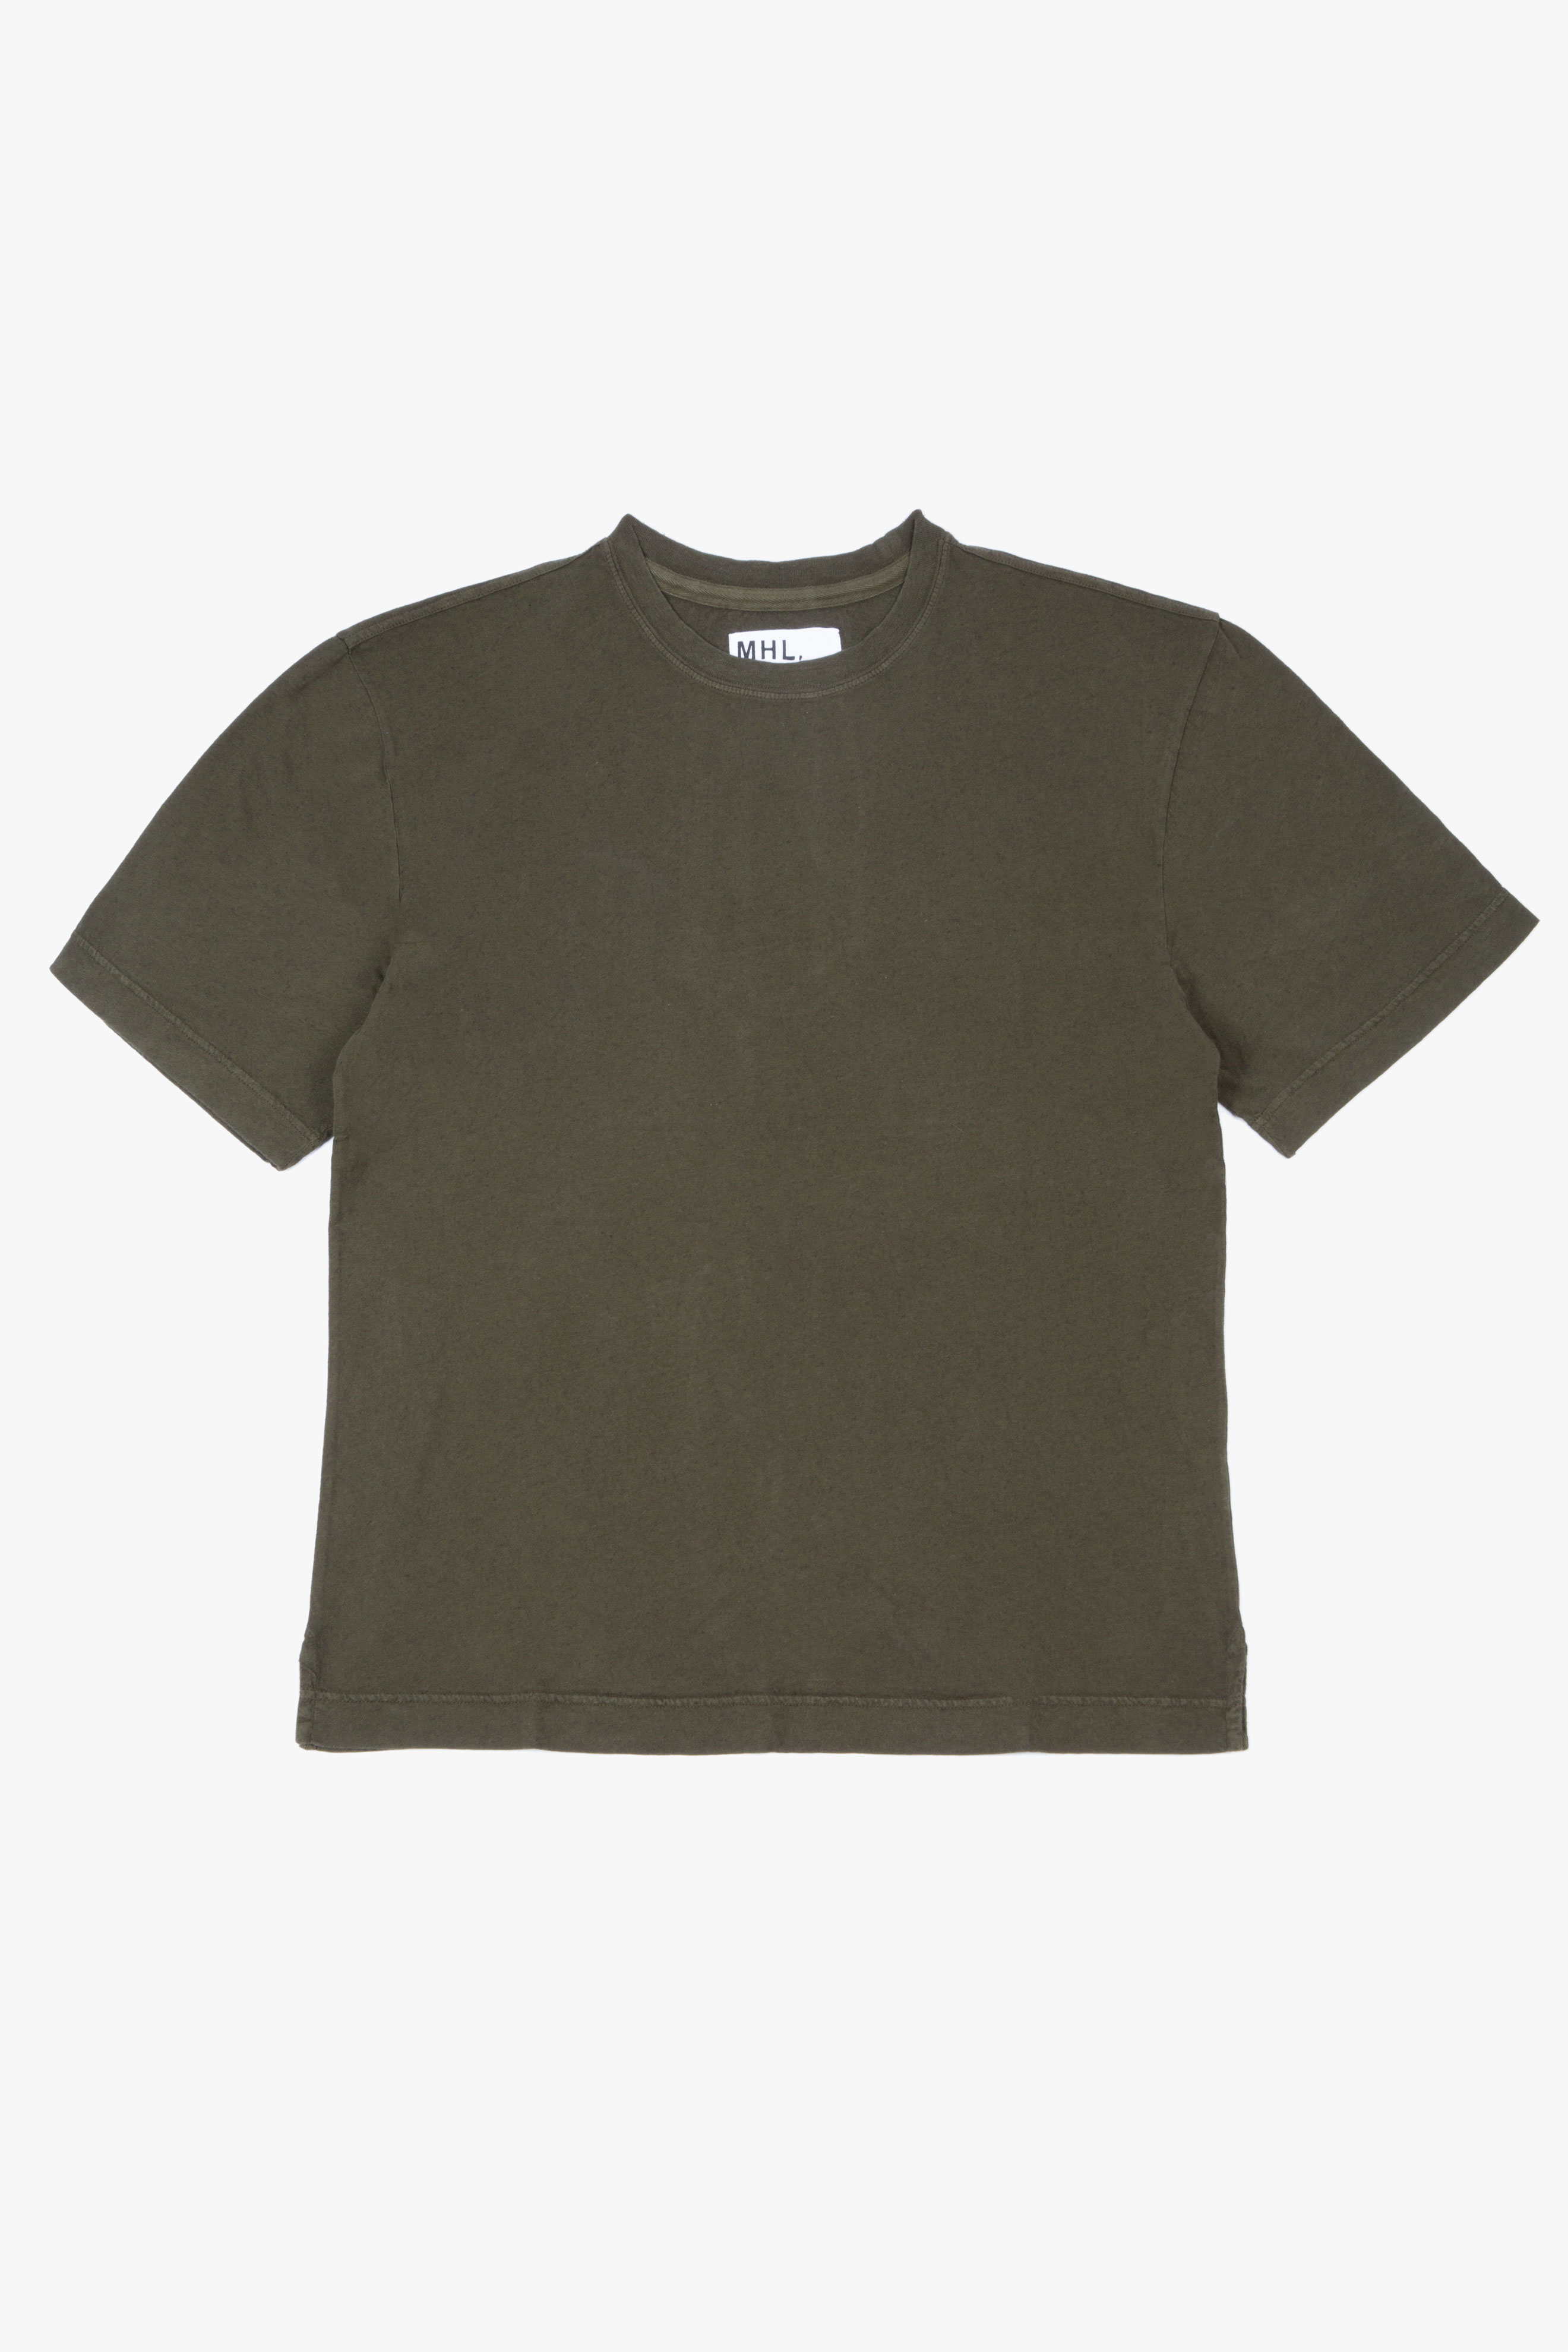 Simple T-Shirt Cotton/Linen Forest